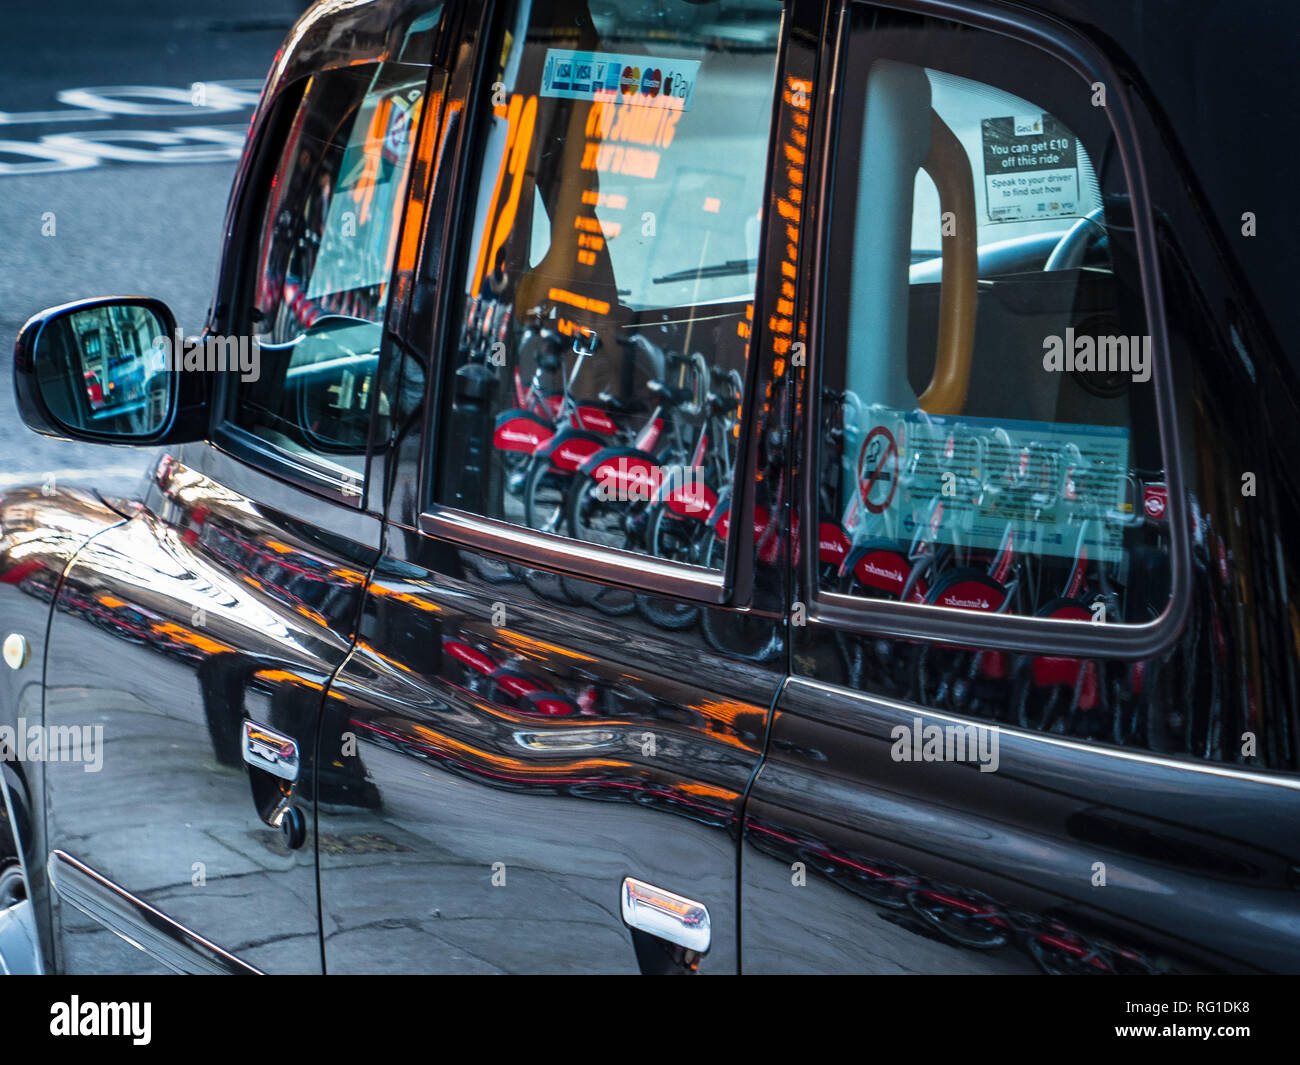 London Taxi, London Black Cab - Straßenbeleuchtung und Fahrräder reflektierte Seite eines Londoner Taxi in London Stockfoto